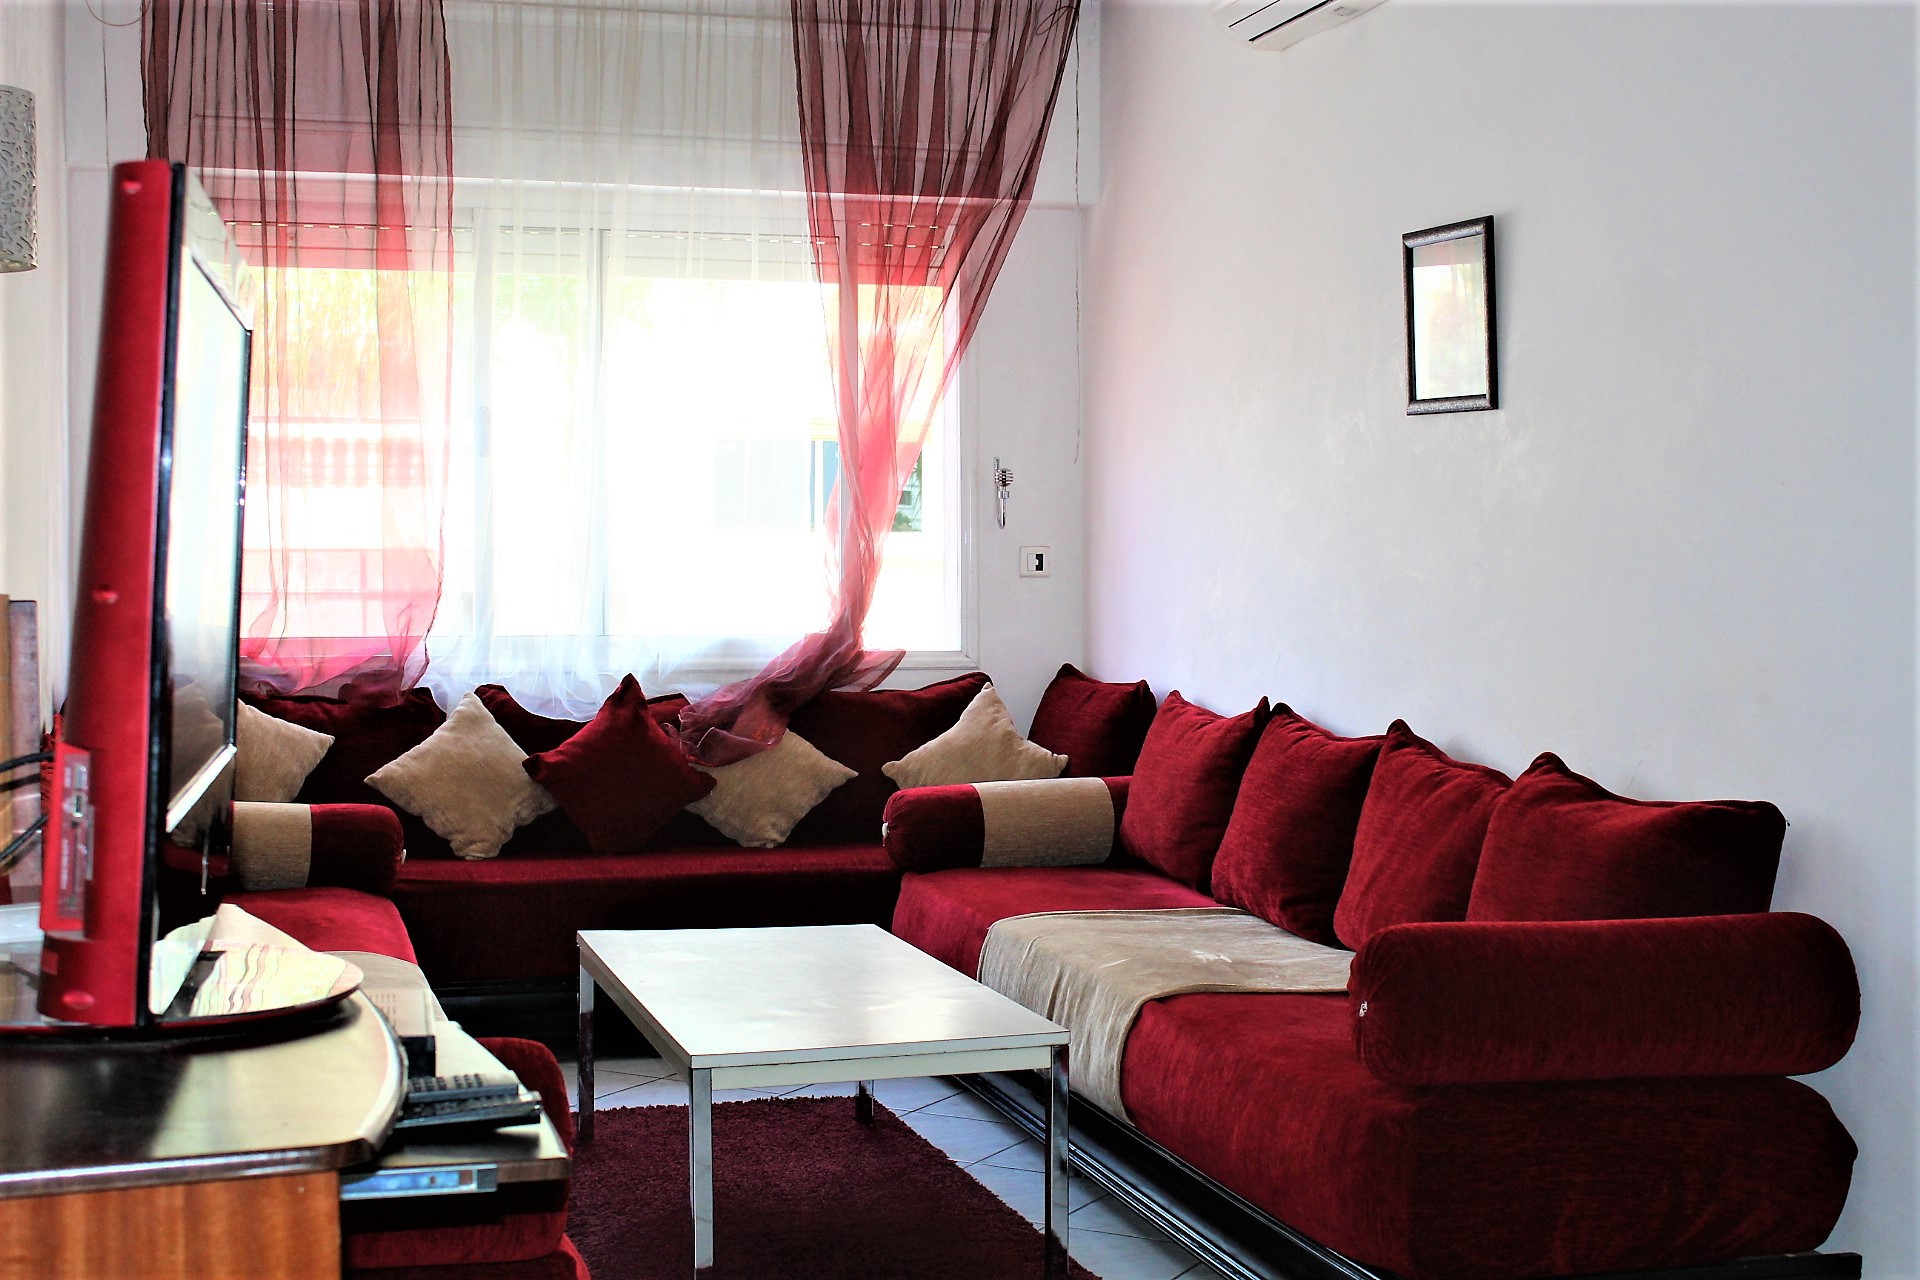 Maroc, Casablanca, Maarif extension, location d’un appartement meublé en parfait état